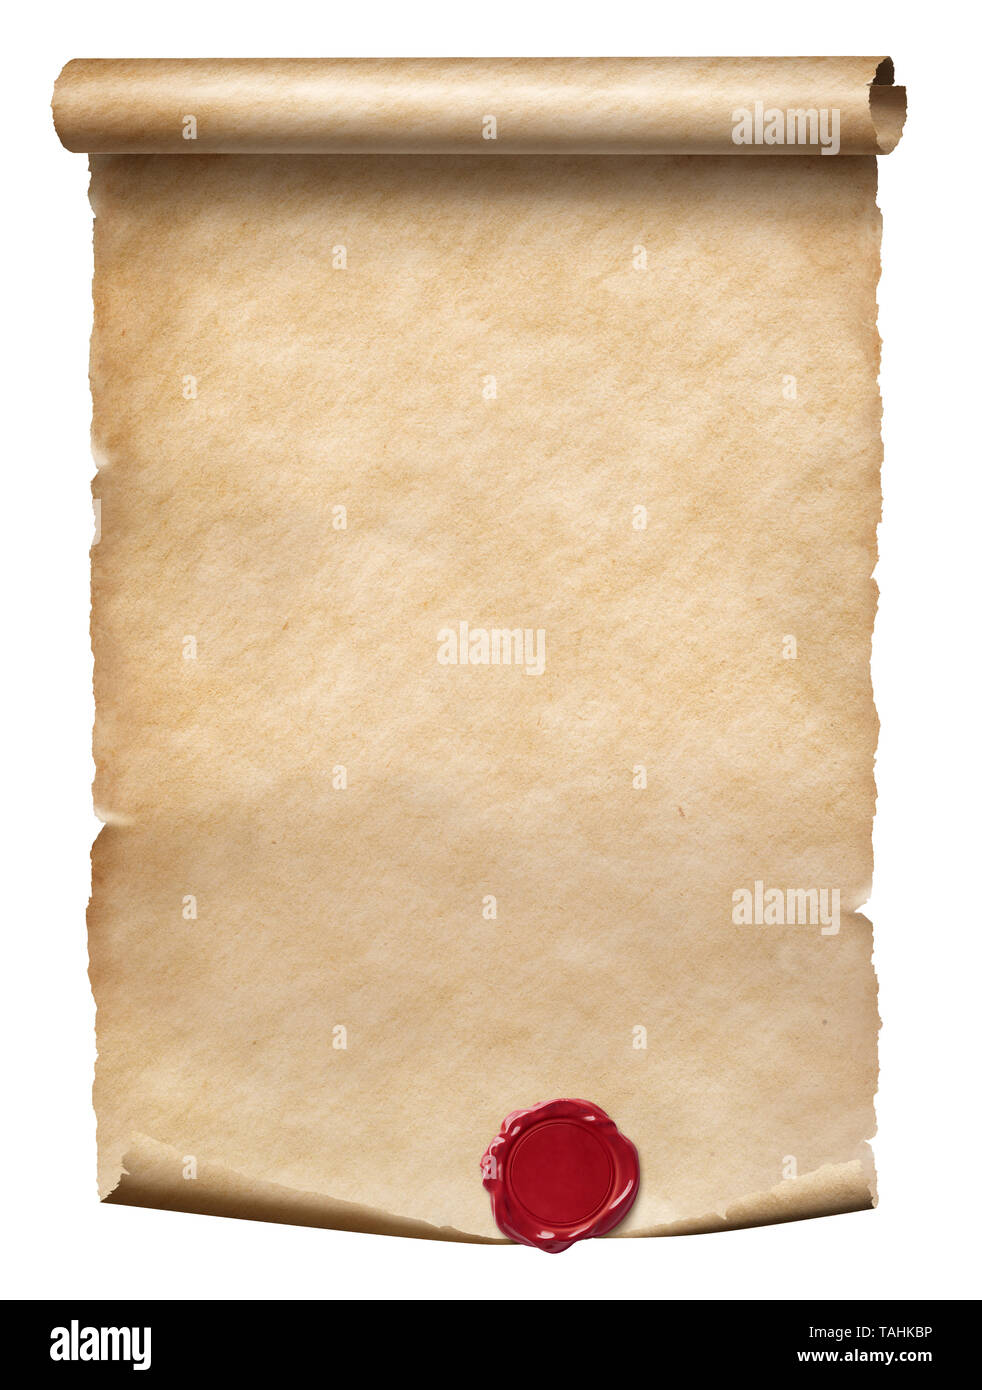 Pergamino antiguo pergamino con sello de lacre aislado en blanco Foto de stock